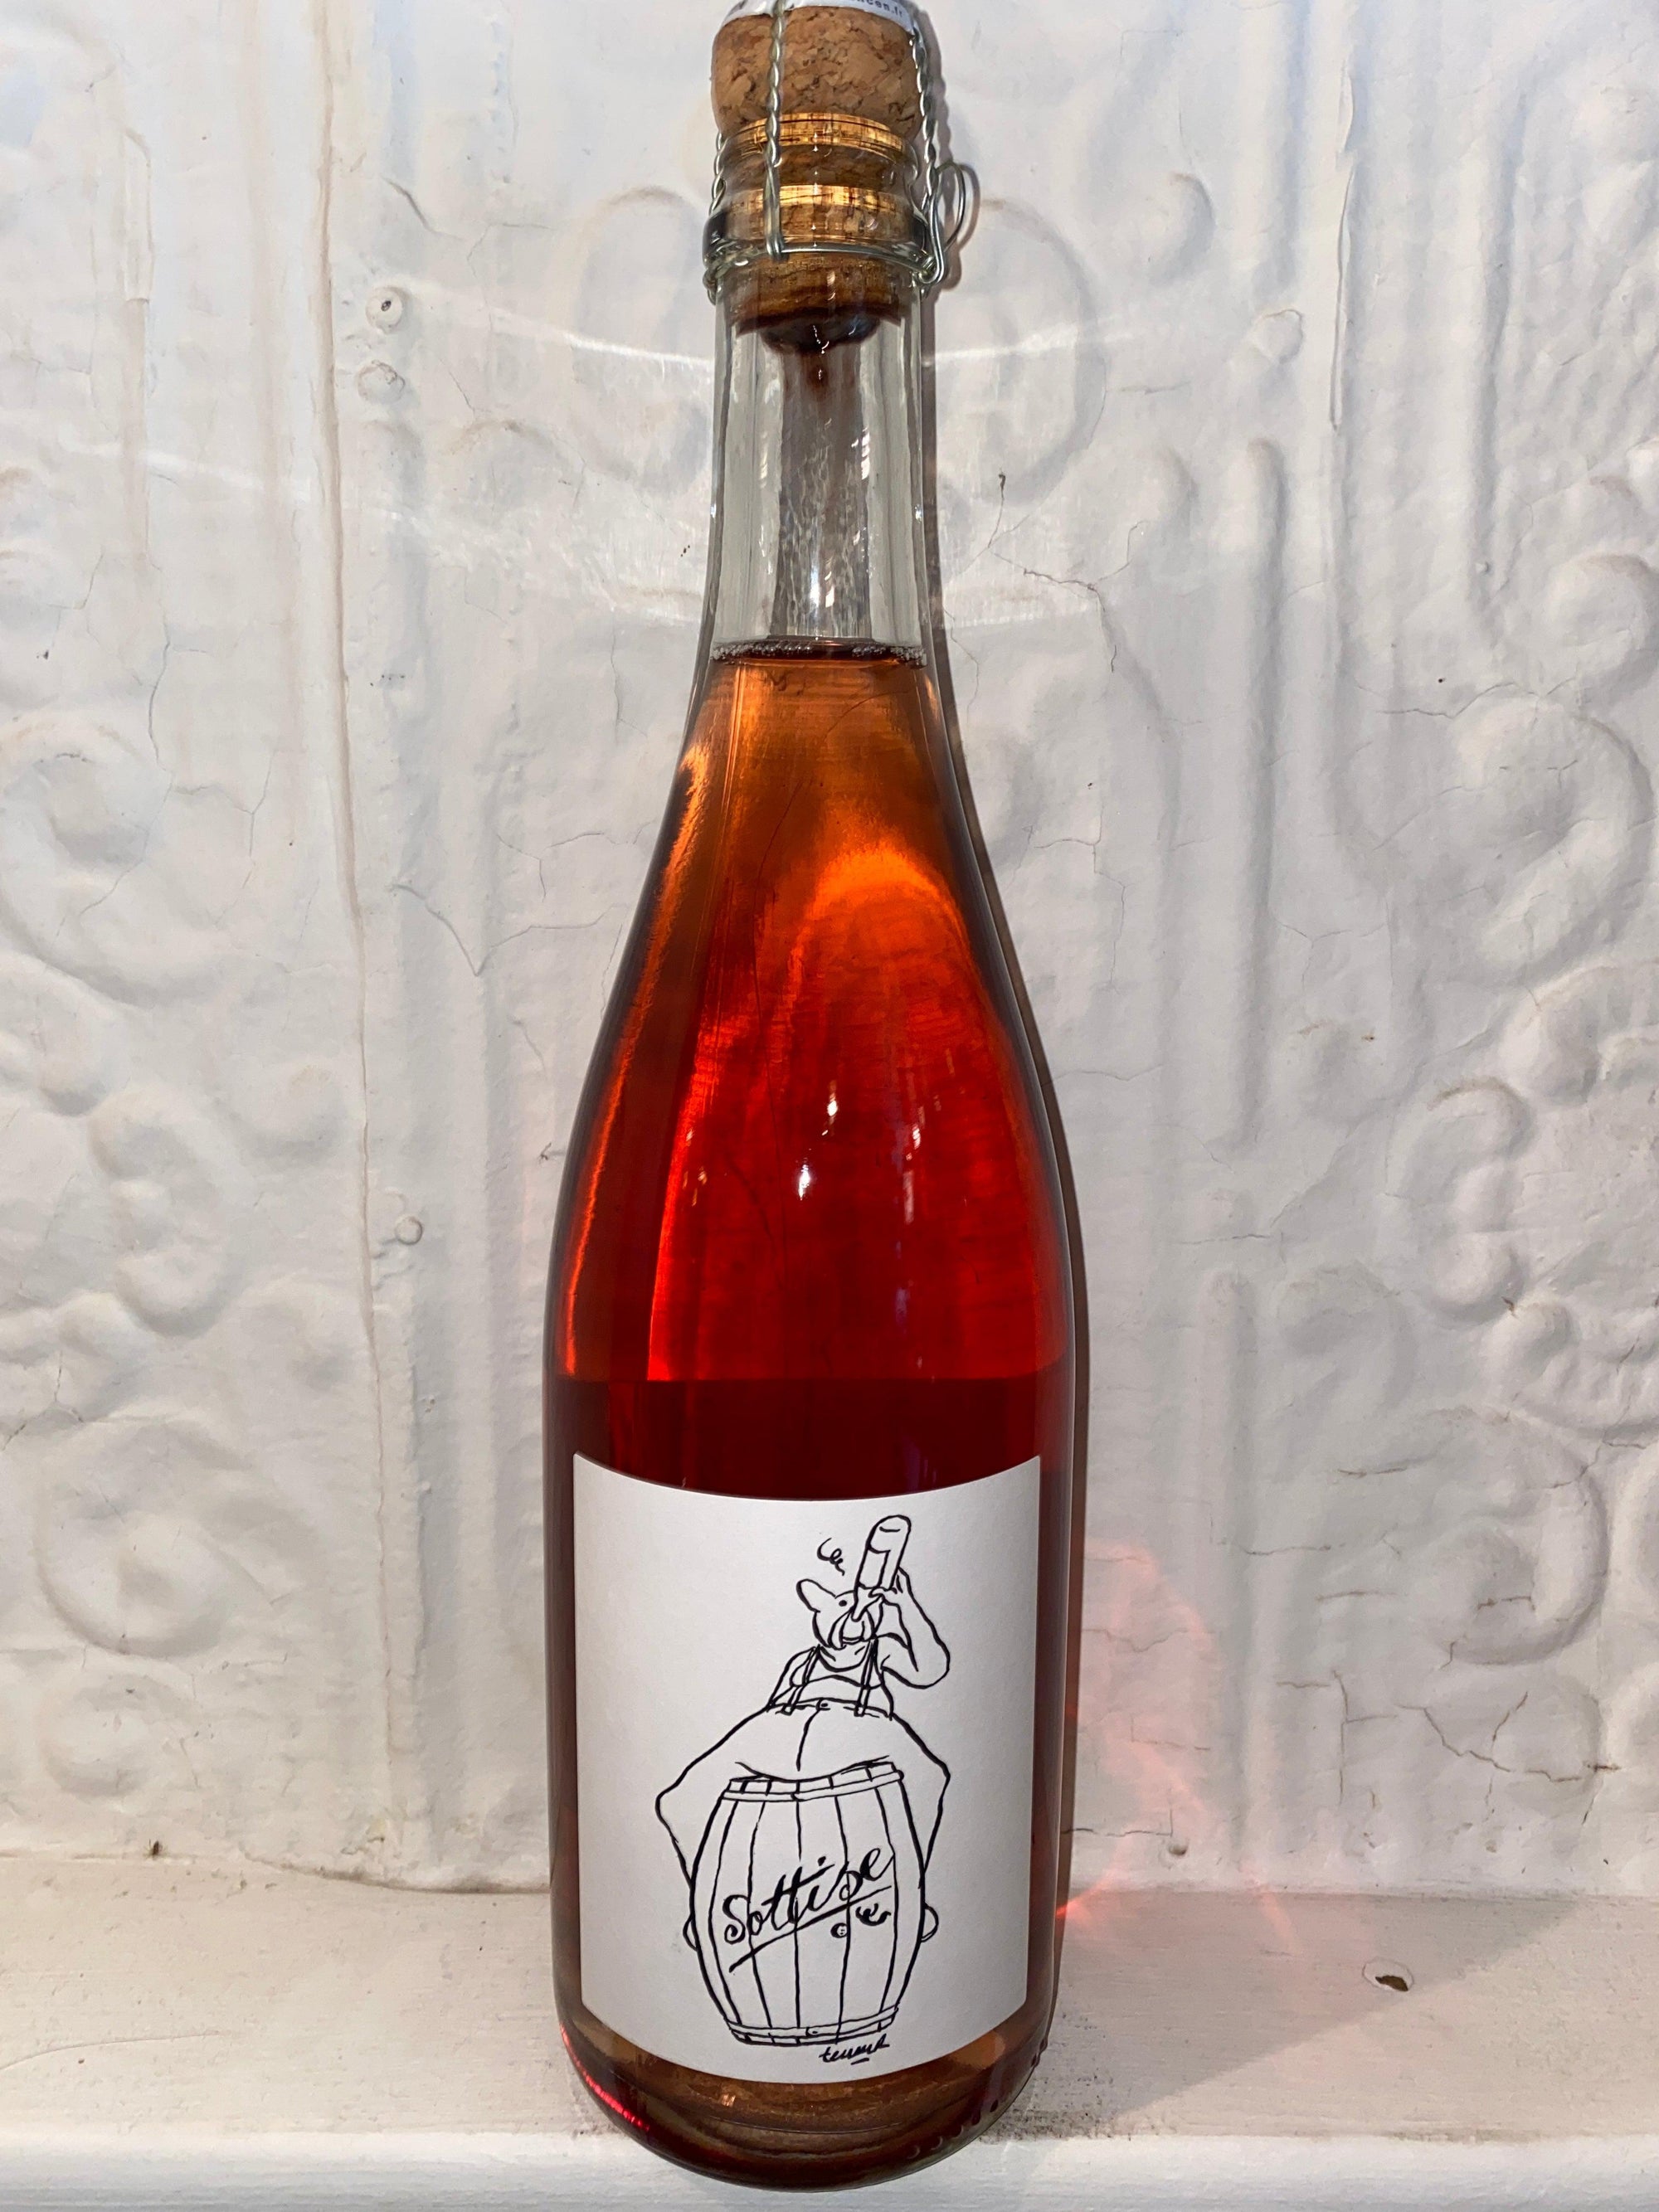 Sotisse Pet Nat Rose, Le Sot de L'Ange NV (Loire Valley, France)-Wine-Bibber & Bell